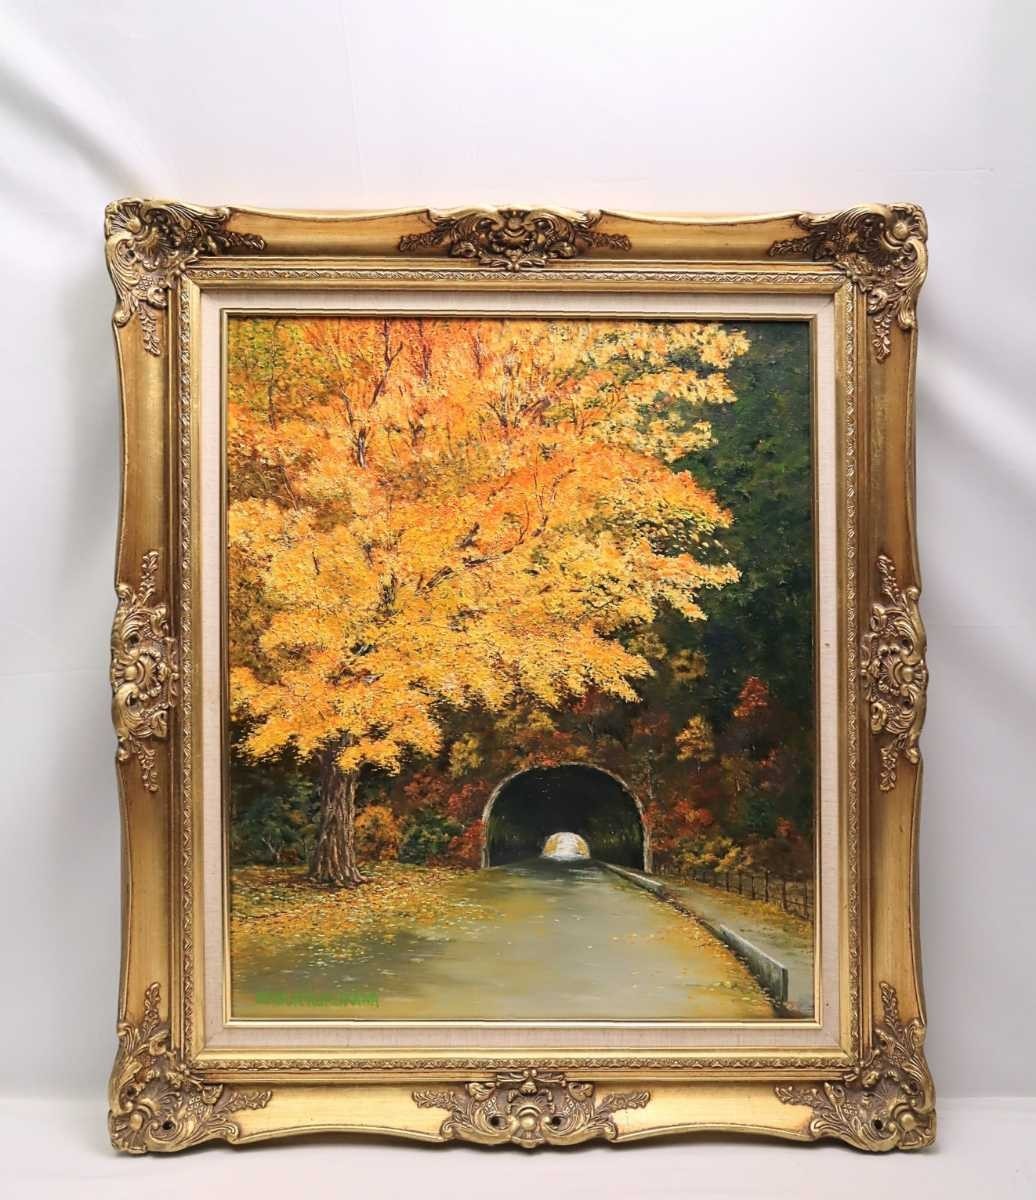 真作 SABUR KUROKAWA 油彩「晩秋の山道」画寸 60.5cm×72.5cm F20 黄金色に色付く大樹と鄙びたトンネルを細密描写で丁寧に描く秋景 5287